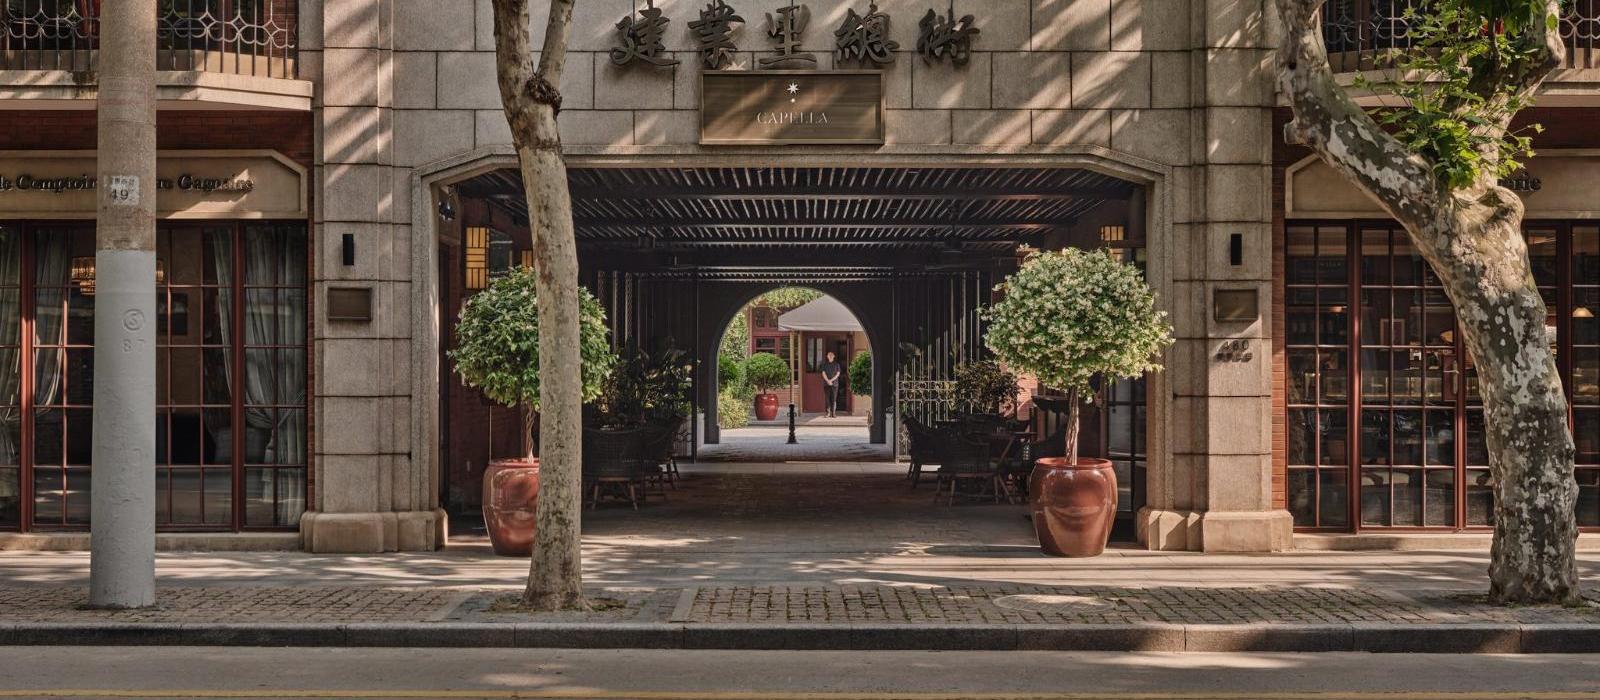 上海建业里嘉佩乐酒店(Capella Shanghai, Jian Ye Li) 图片  www.lhw.cn